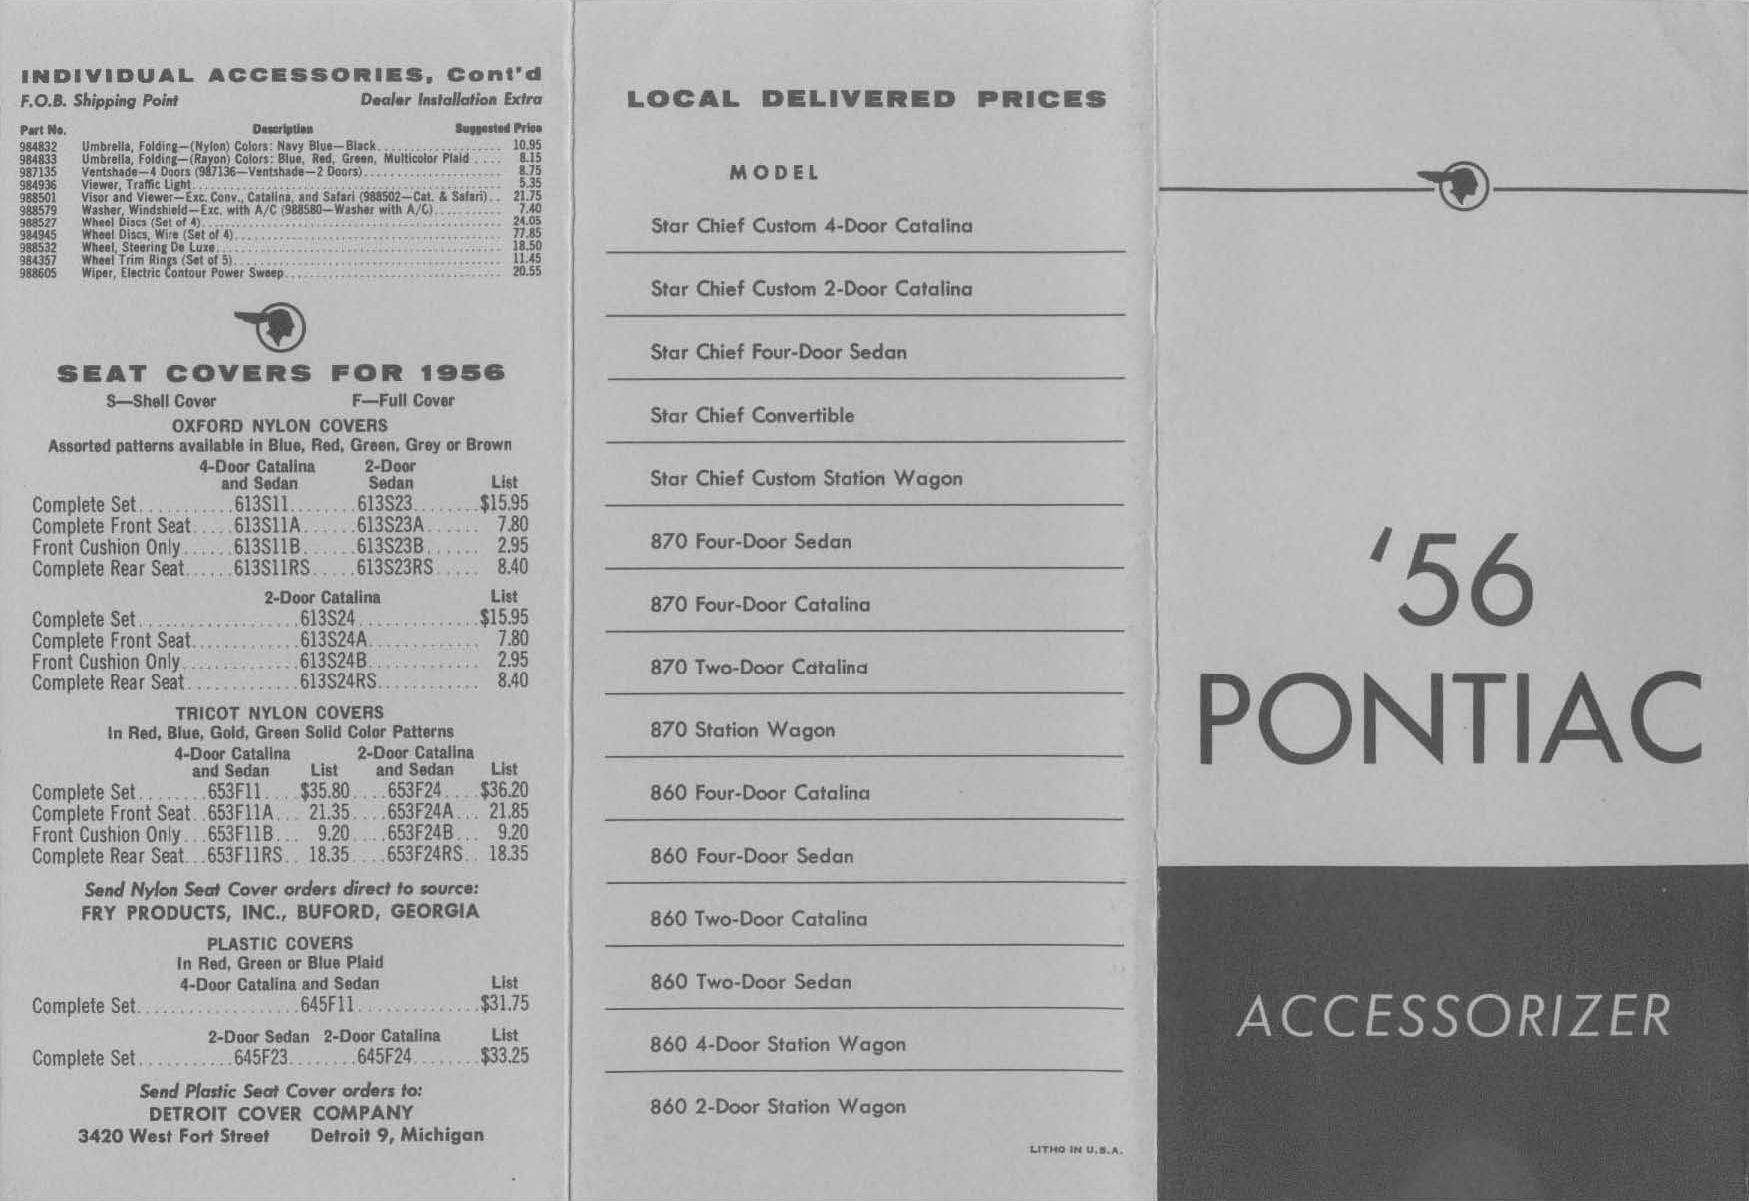 1956_Pontiac_Accessorizer-01